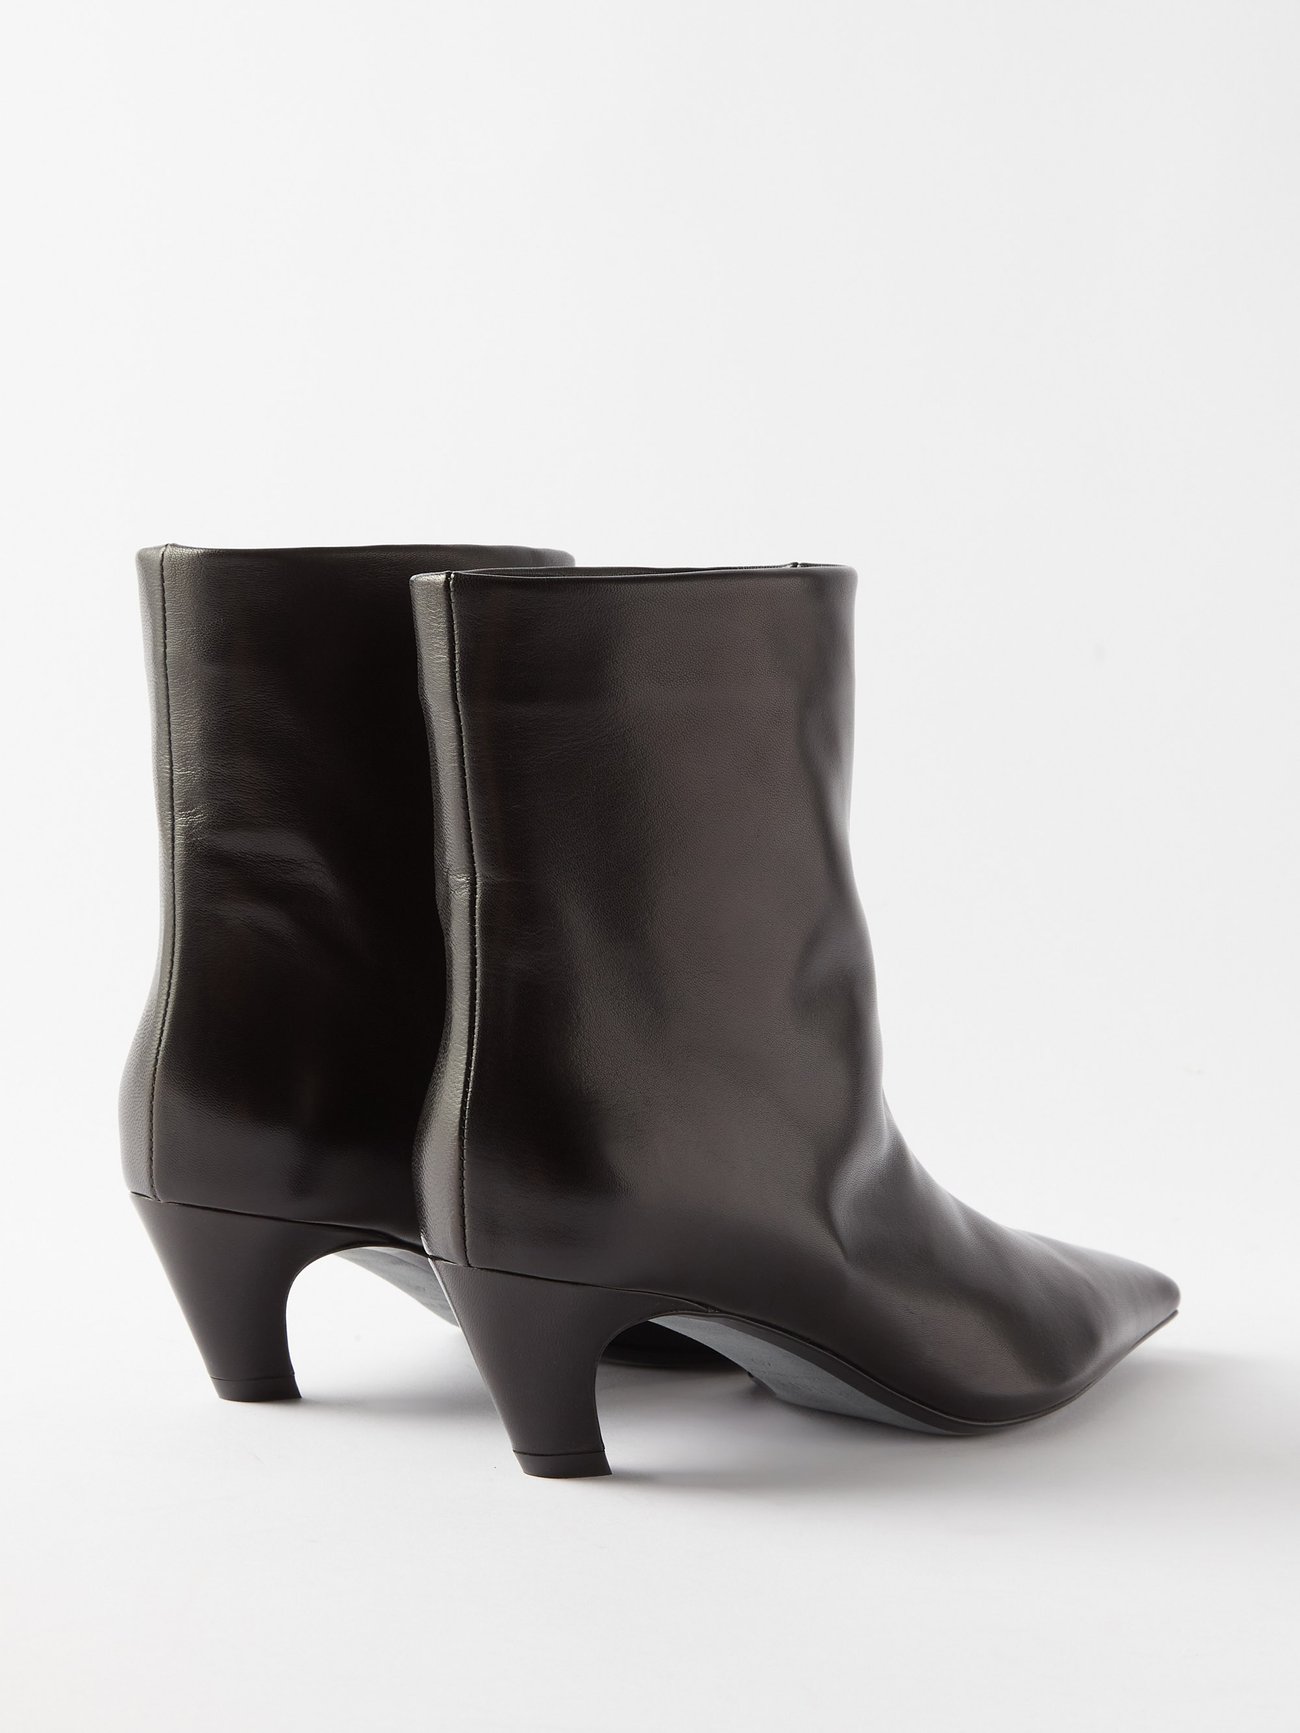 Arizona 45 square-toe leather boots